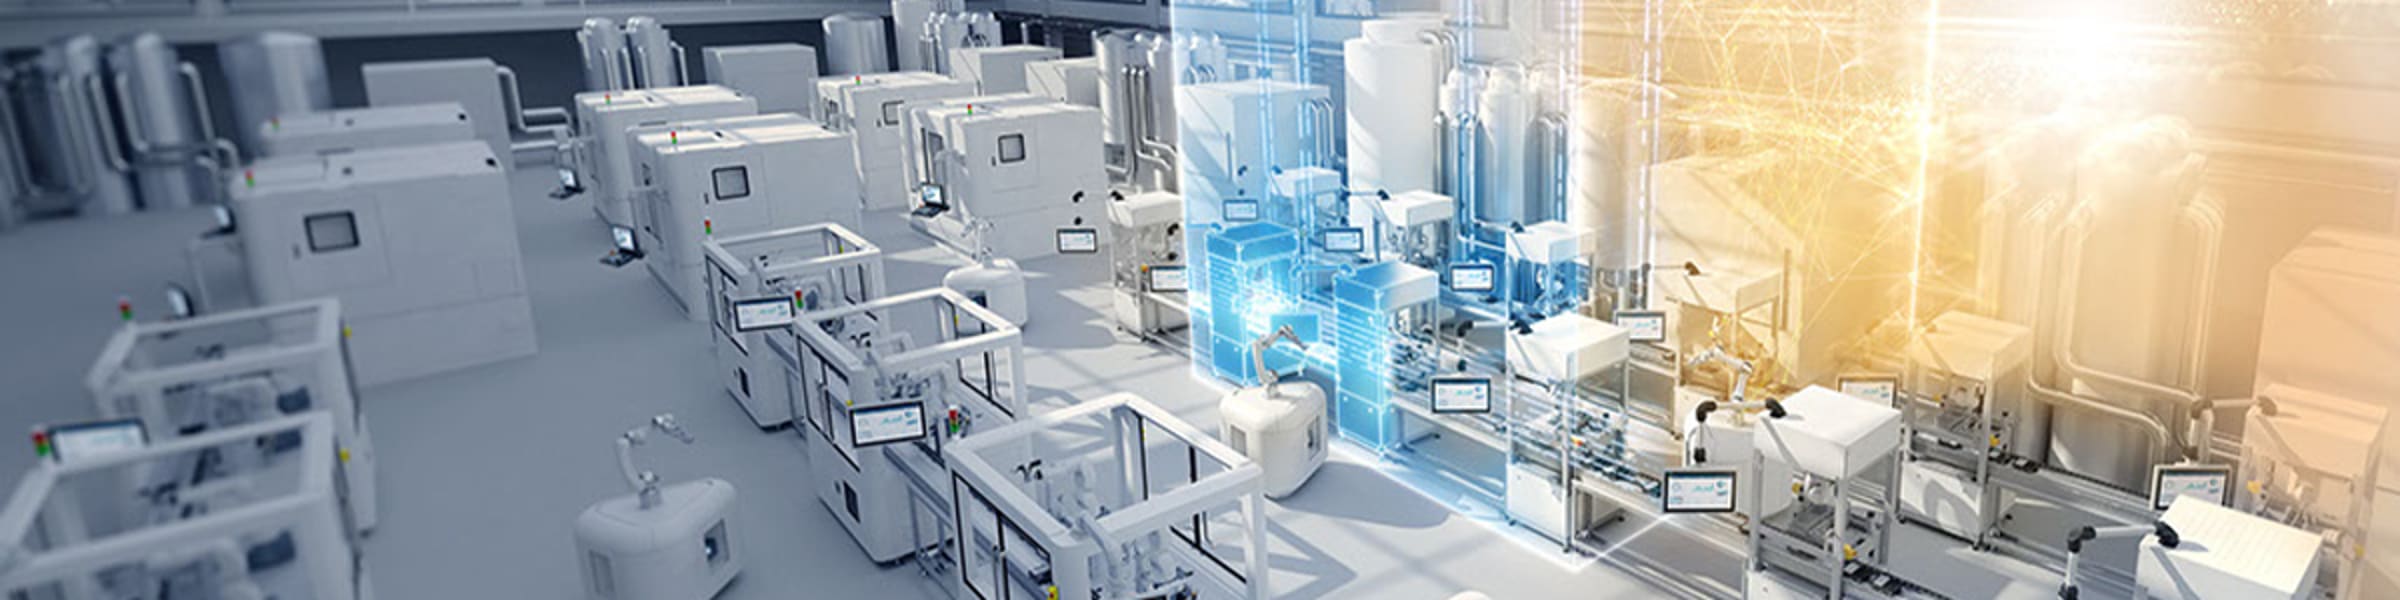 Siemens, leider in industriële automatisering